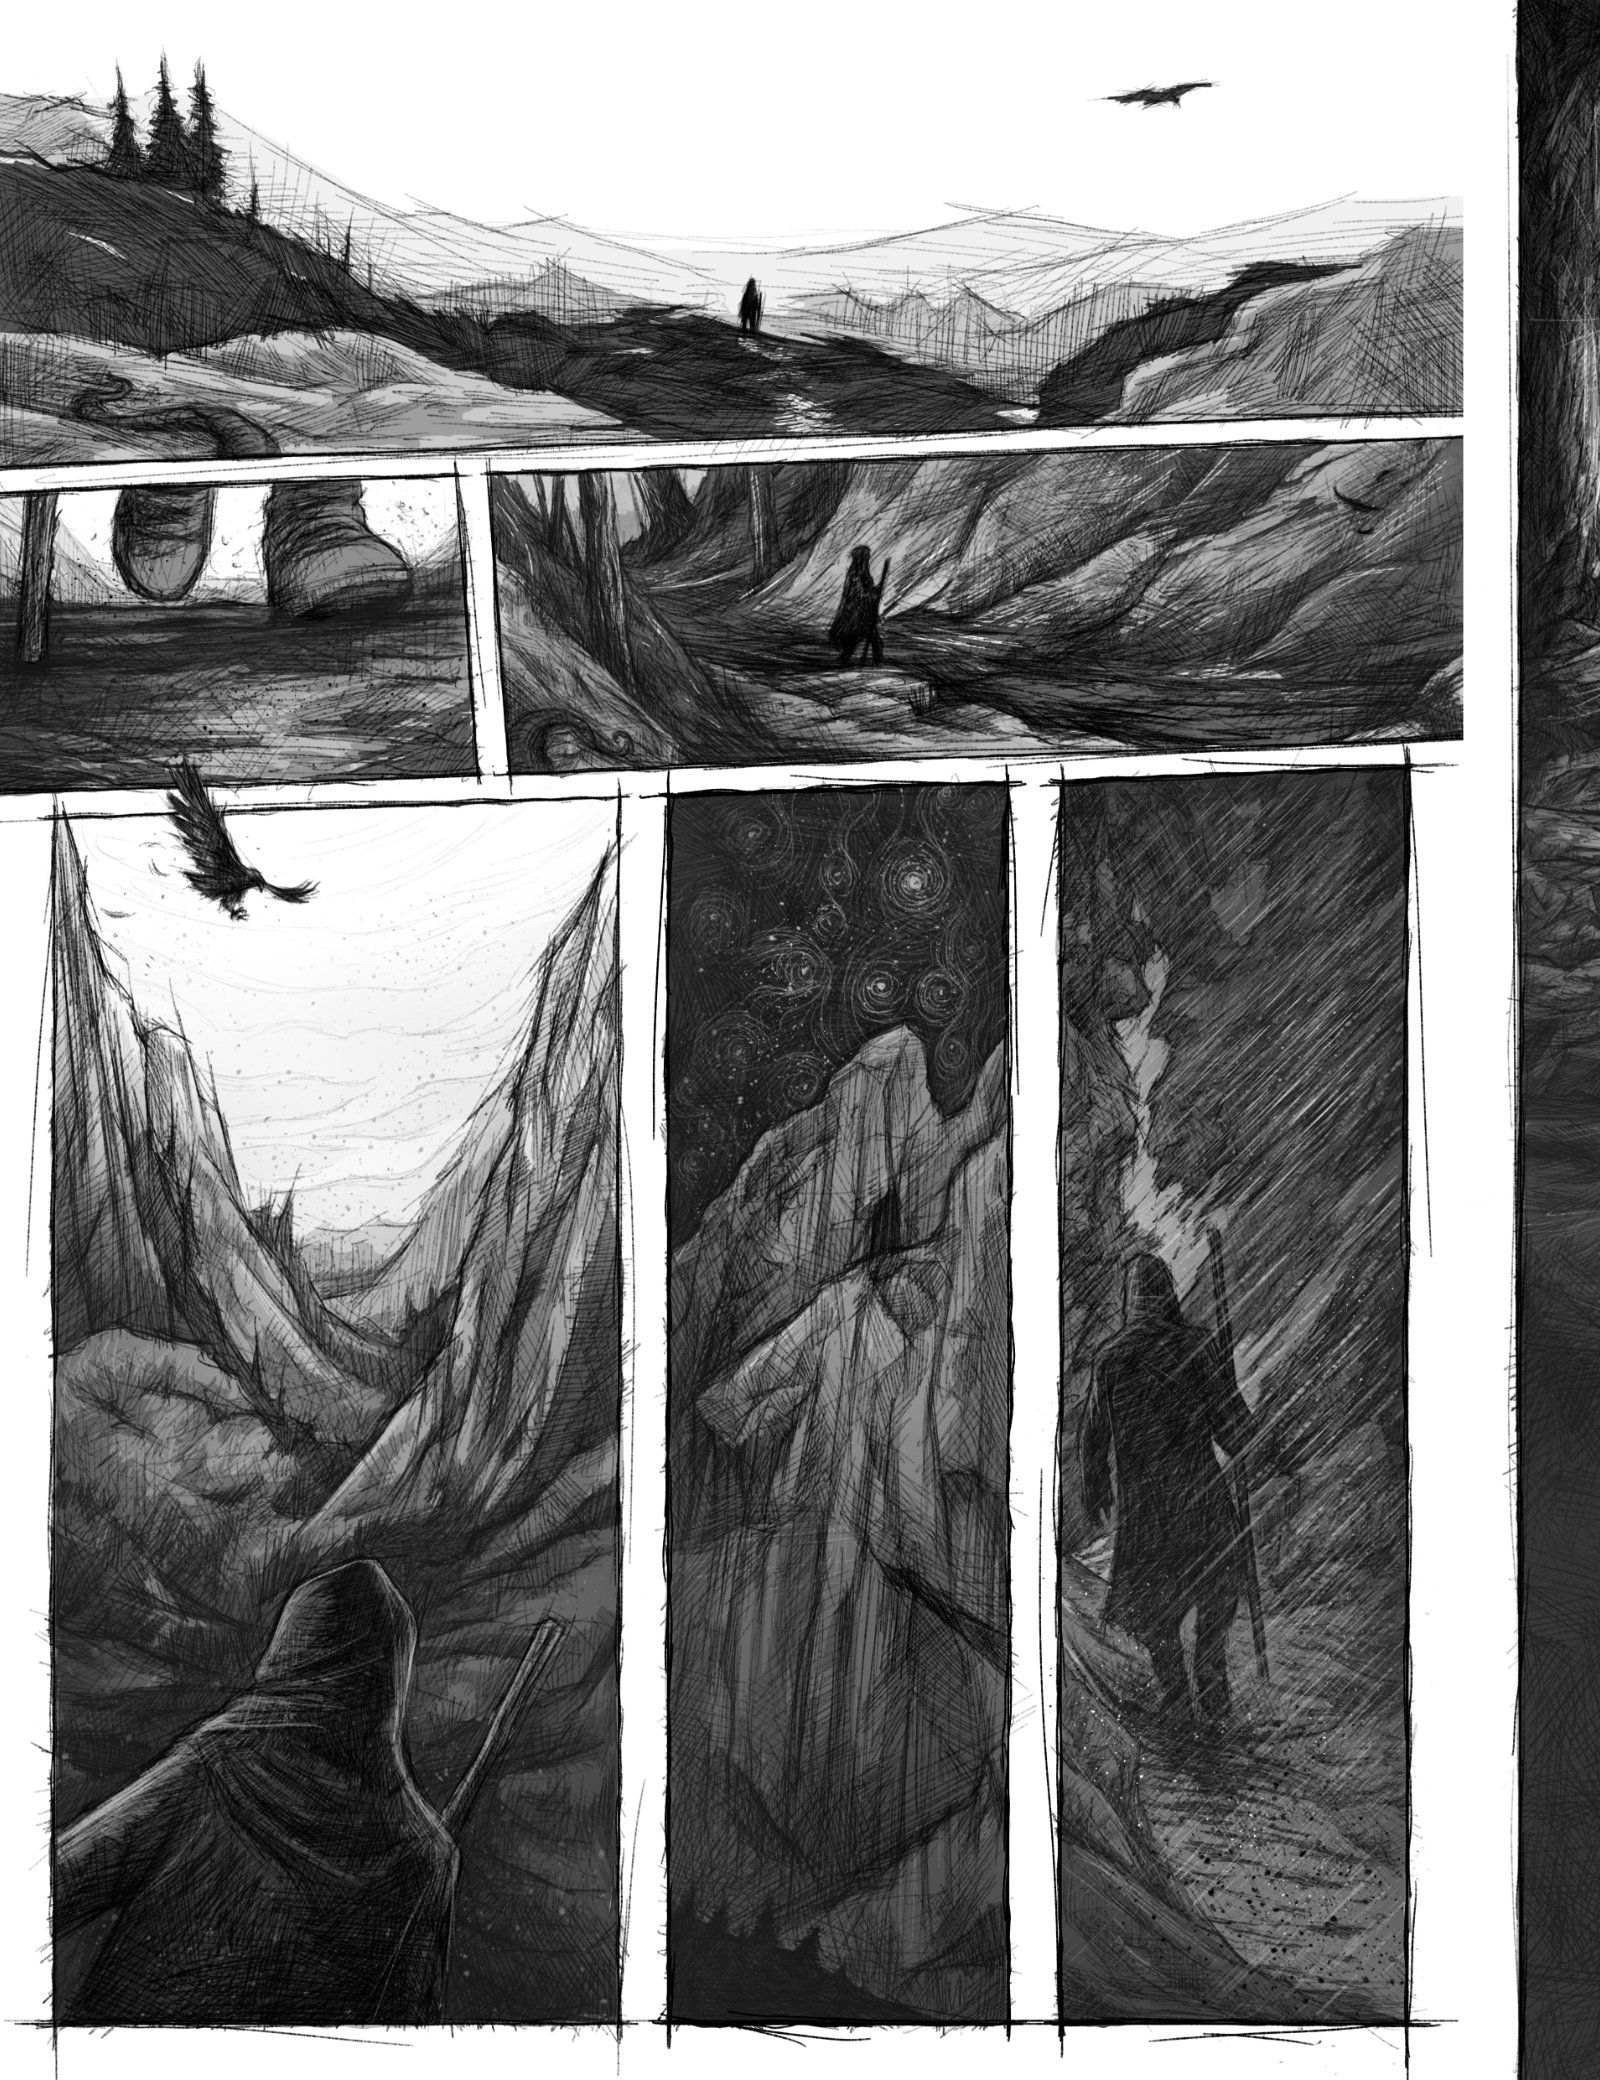 Eine Comic Seite auf der man im Skizzenstil gezeichnete Panels sieht, die den Weg einer Silhouette durch Naturlandschaft zeigen, während ein Adler am Himmel fliegt